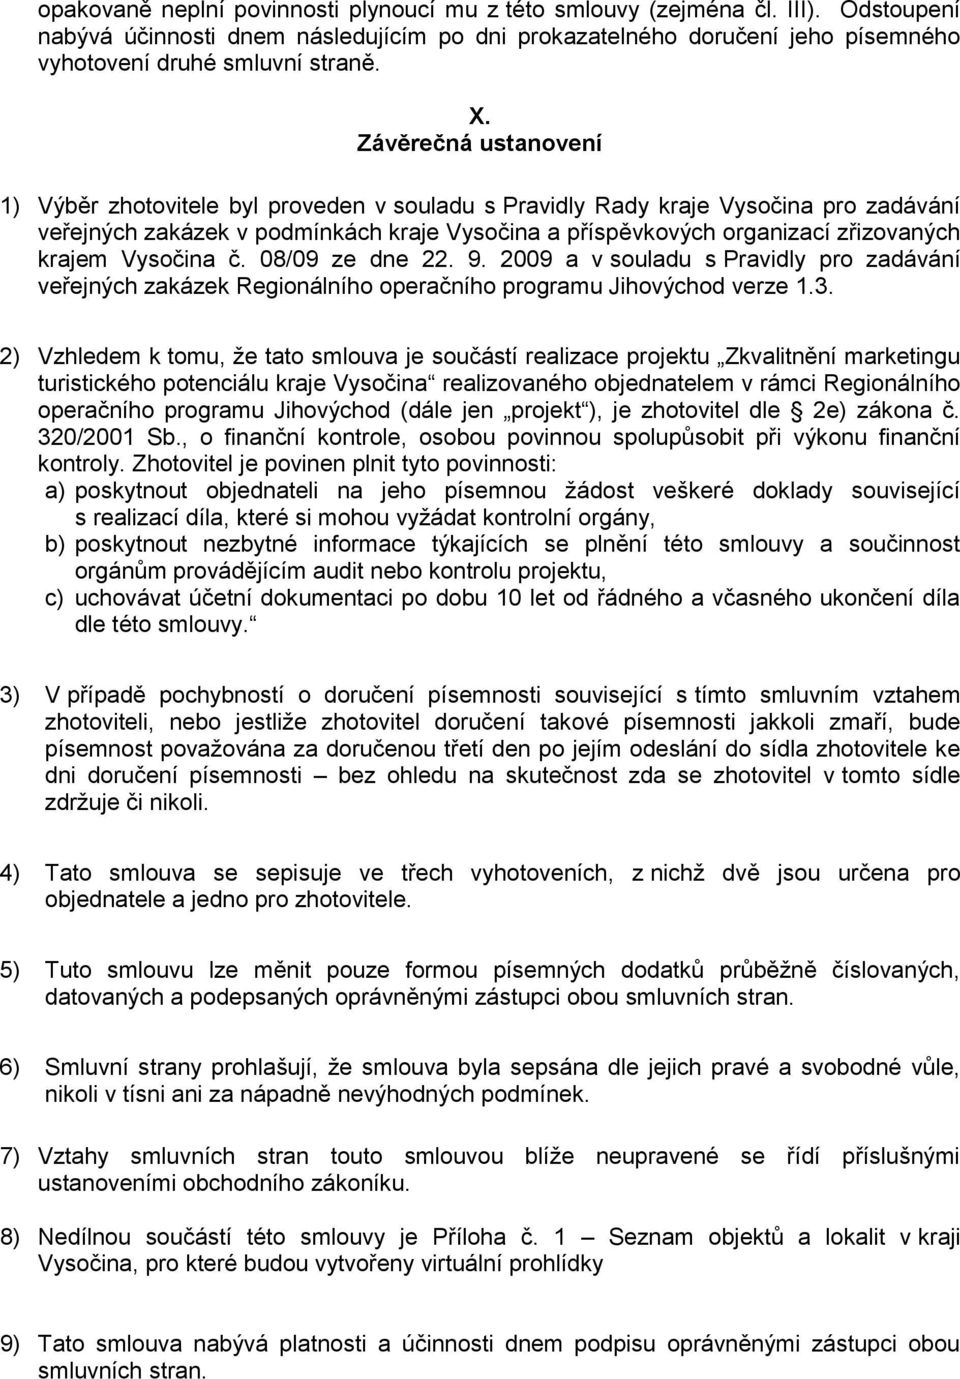 krajem Vysočina č. 08/09 ze dne 22. 9. 2009 a v souladu s Pravidly pro zadávání veřejných zakázek Regionálního operačního programu Jihovýchod verze 1.3.